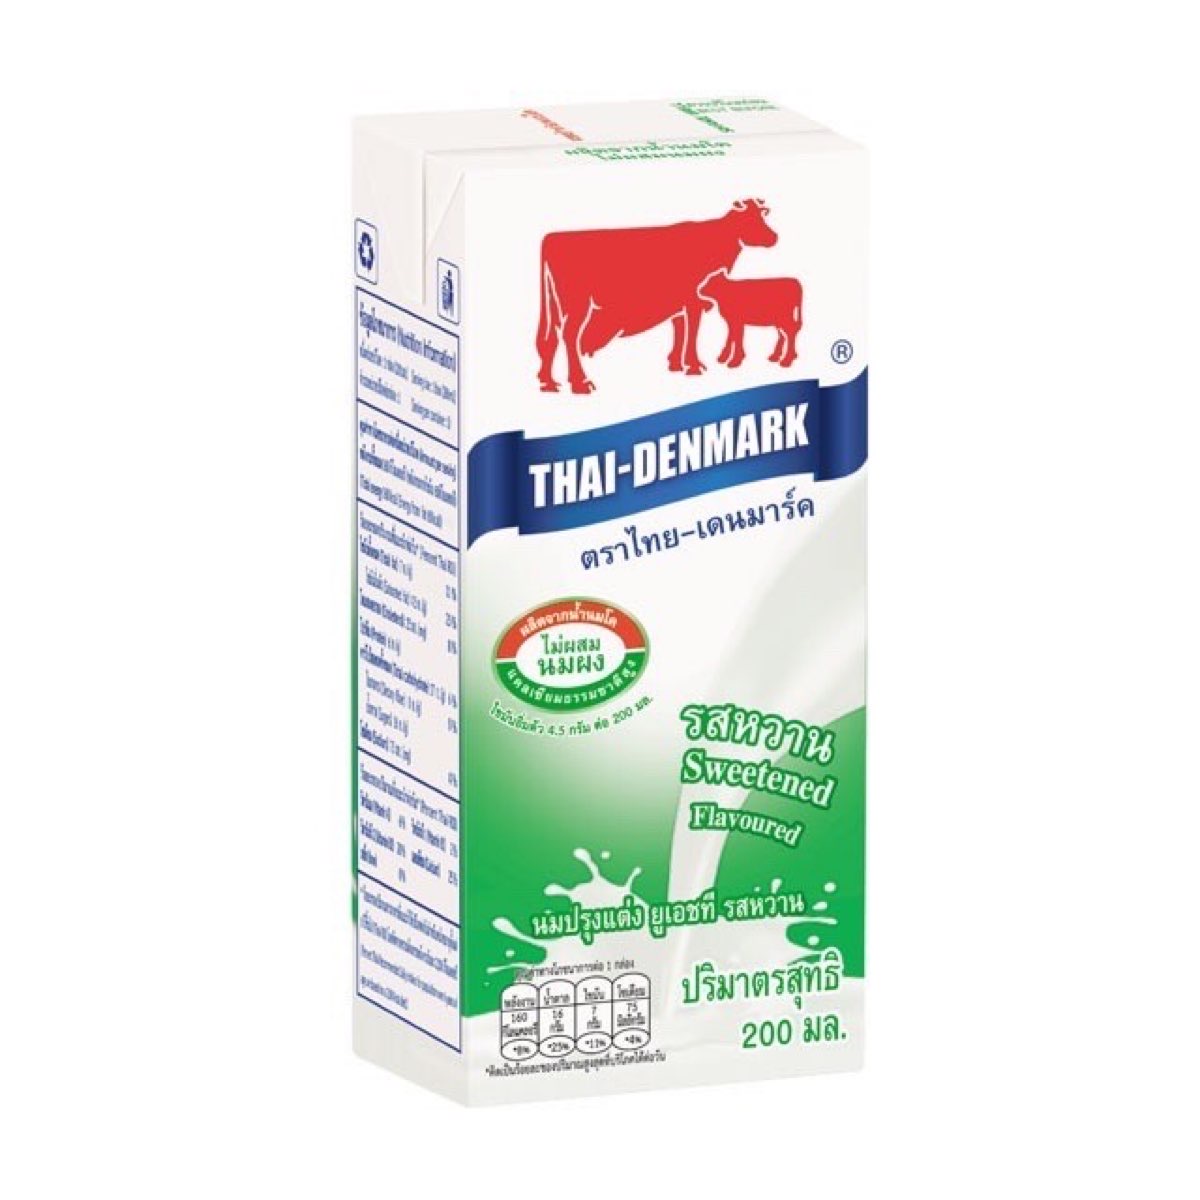 นมไทย-เดนมาร์ค รสหวาน ขนาด 200 ml.บรรจุ 36 กล่อง